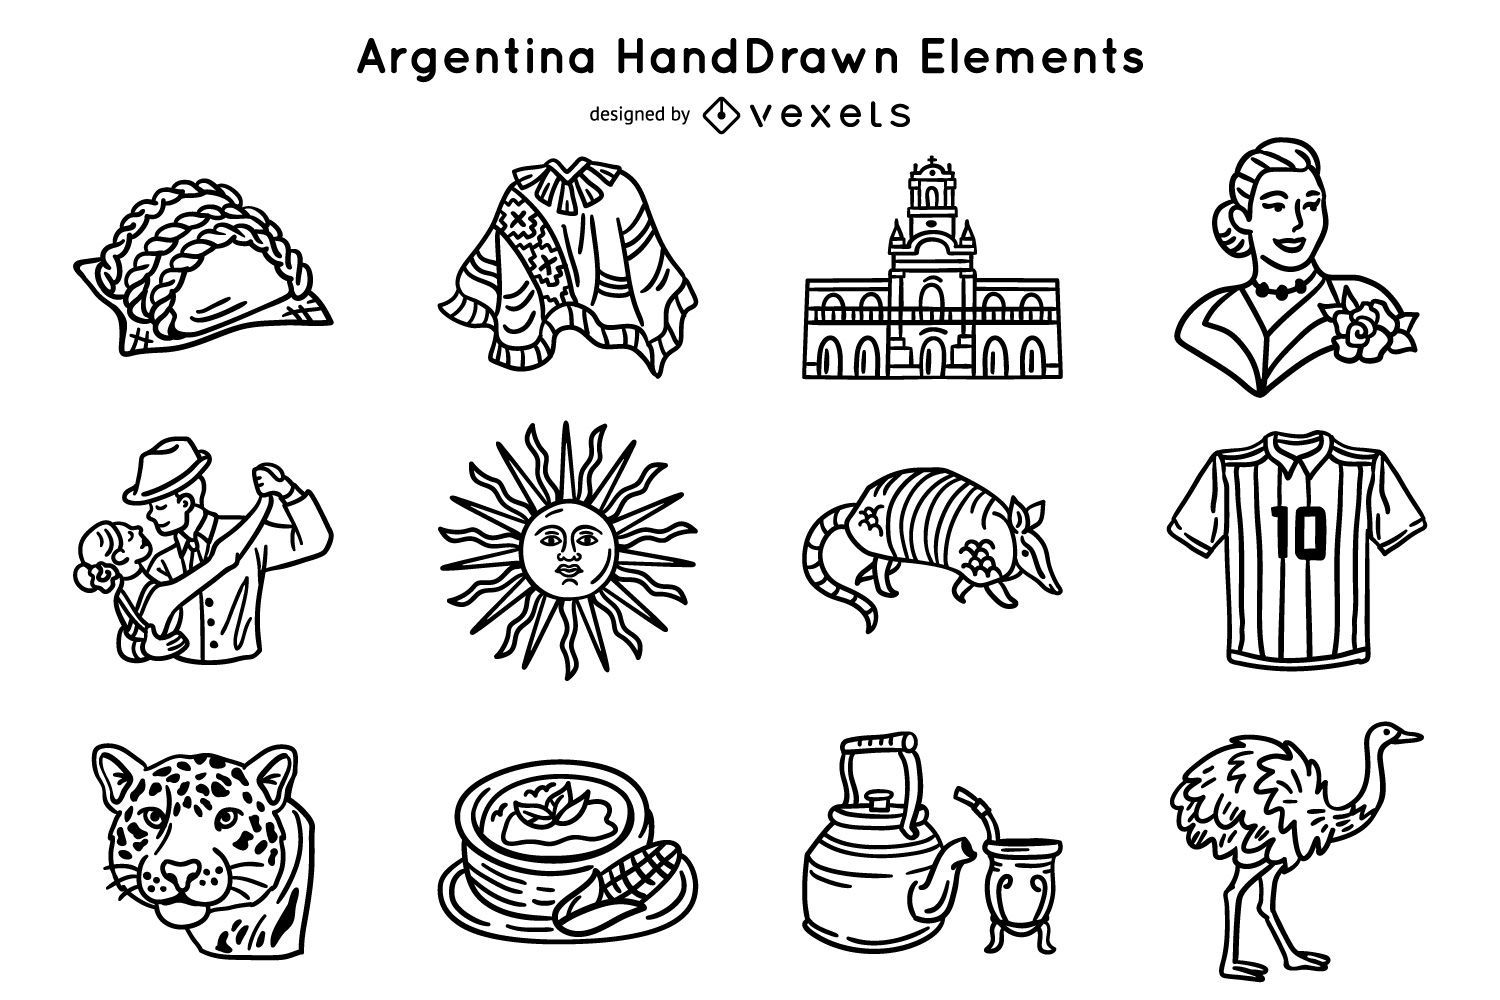 Pacote de elementos do traço argentina desenhado à mão